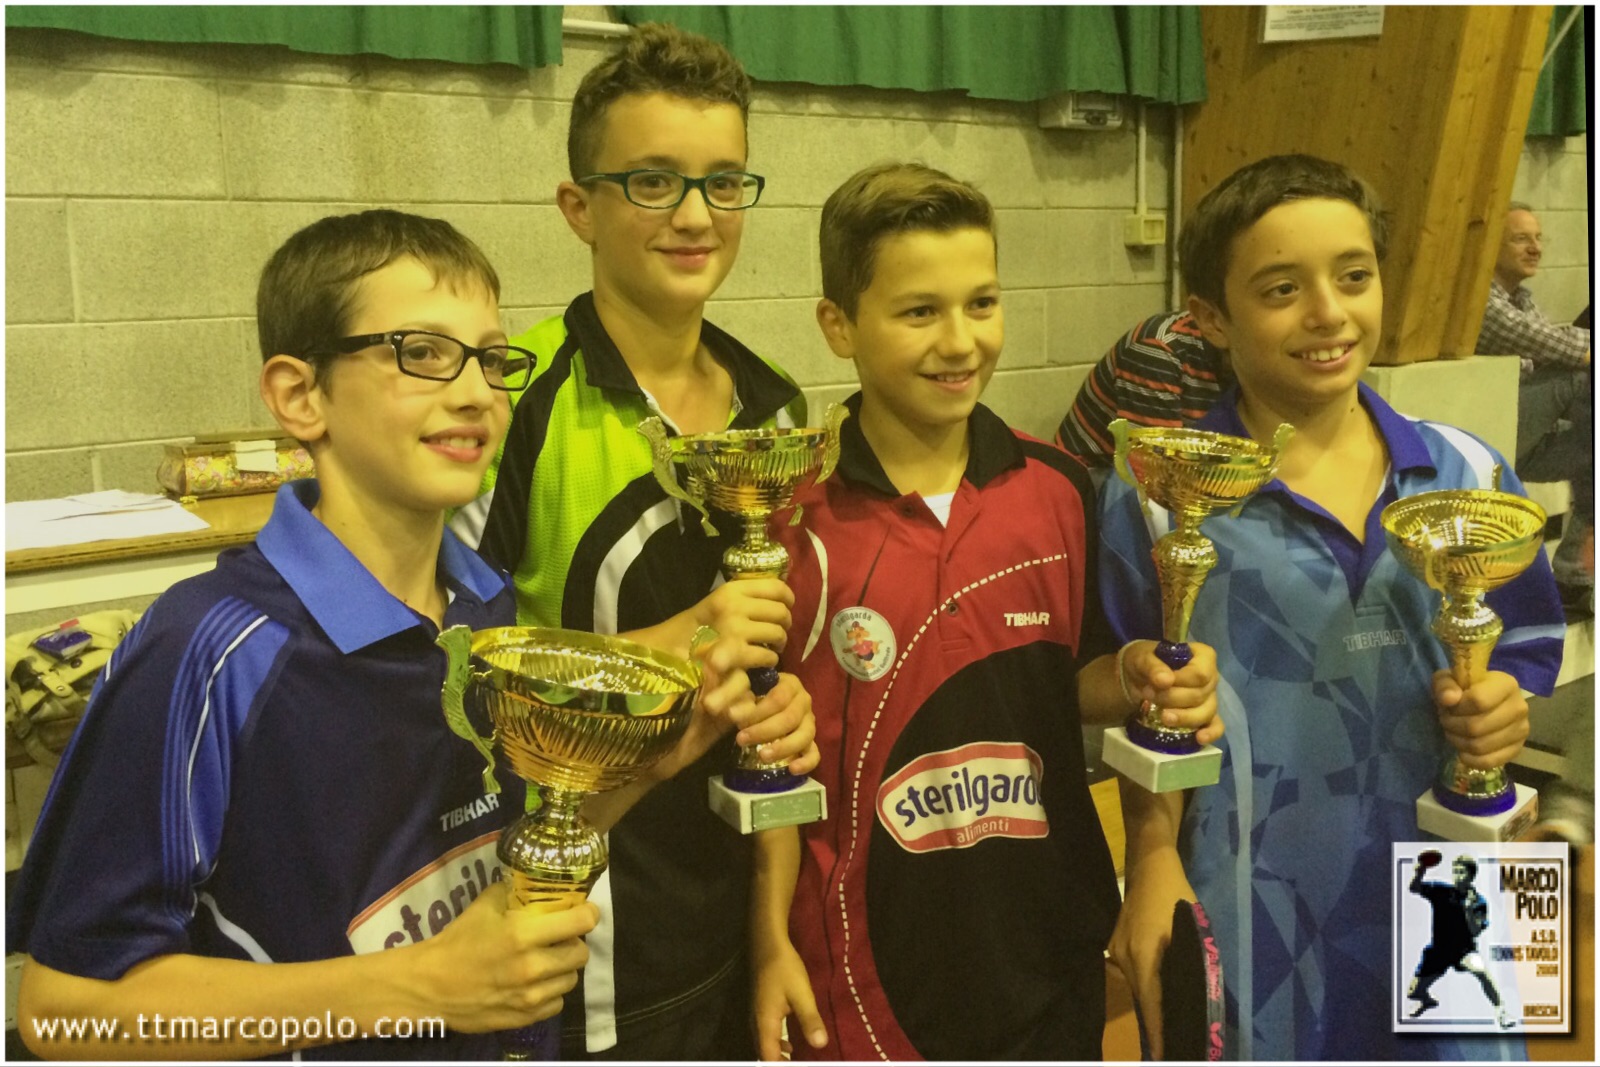 Il podio della categoria Ragazzi al torneo regionale giovanile di Abbadia Lariana